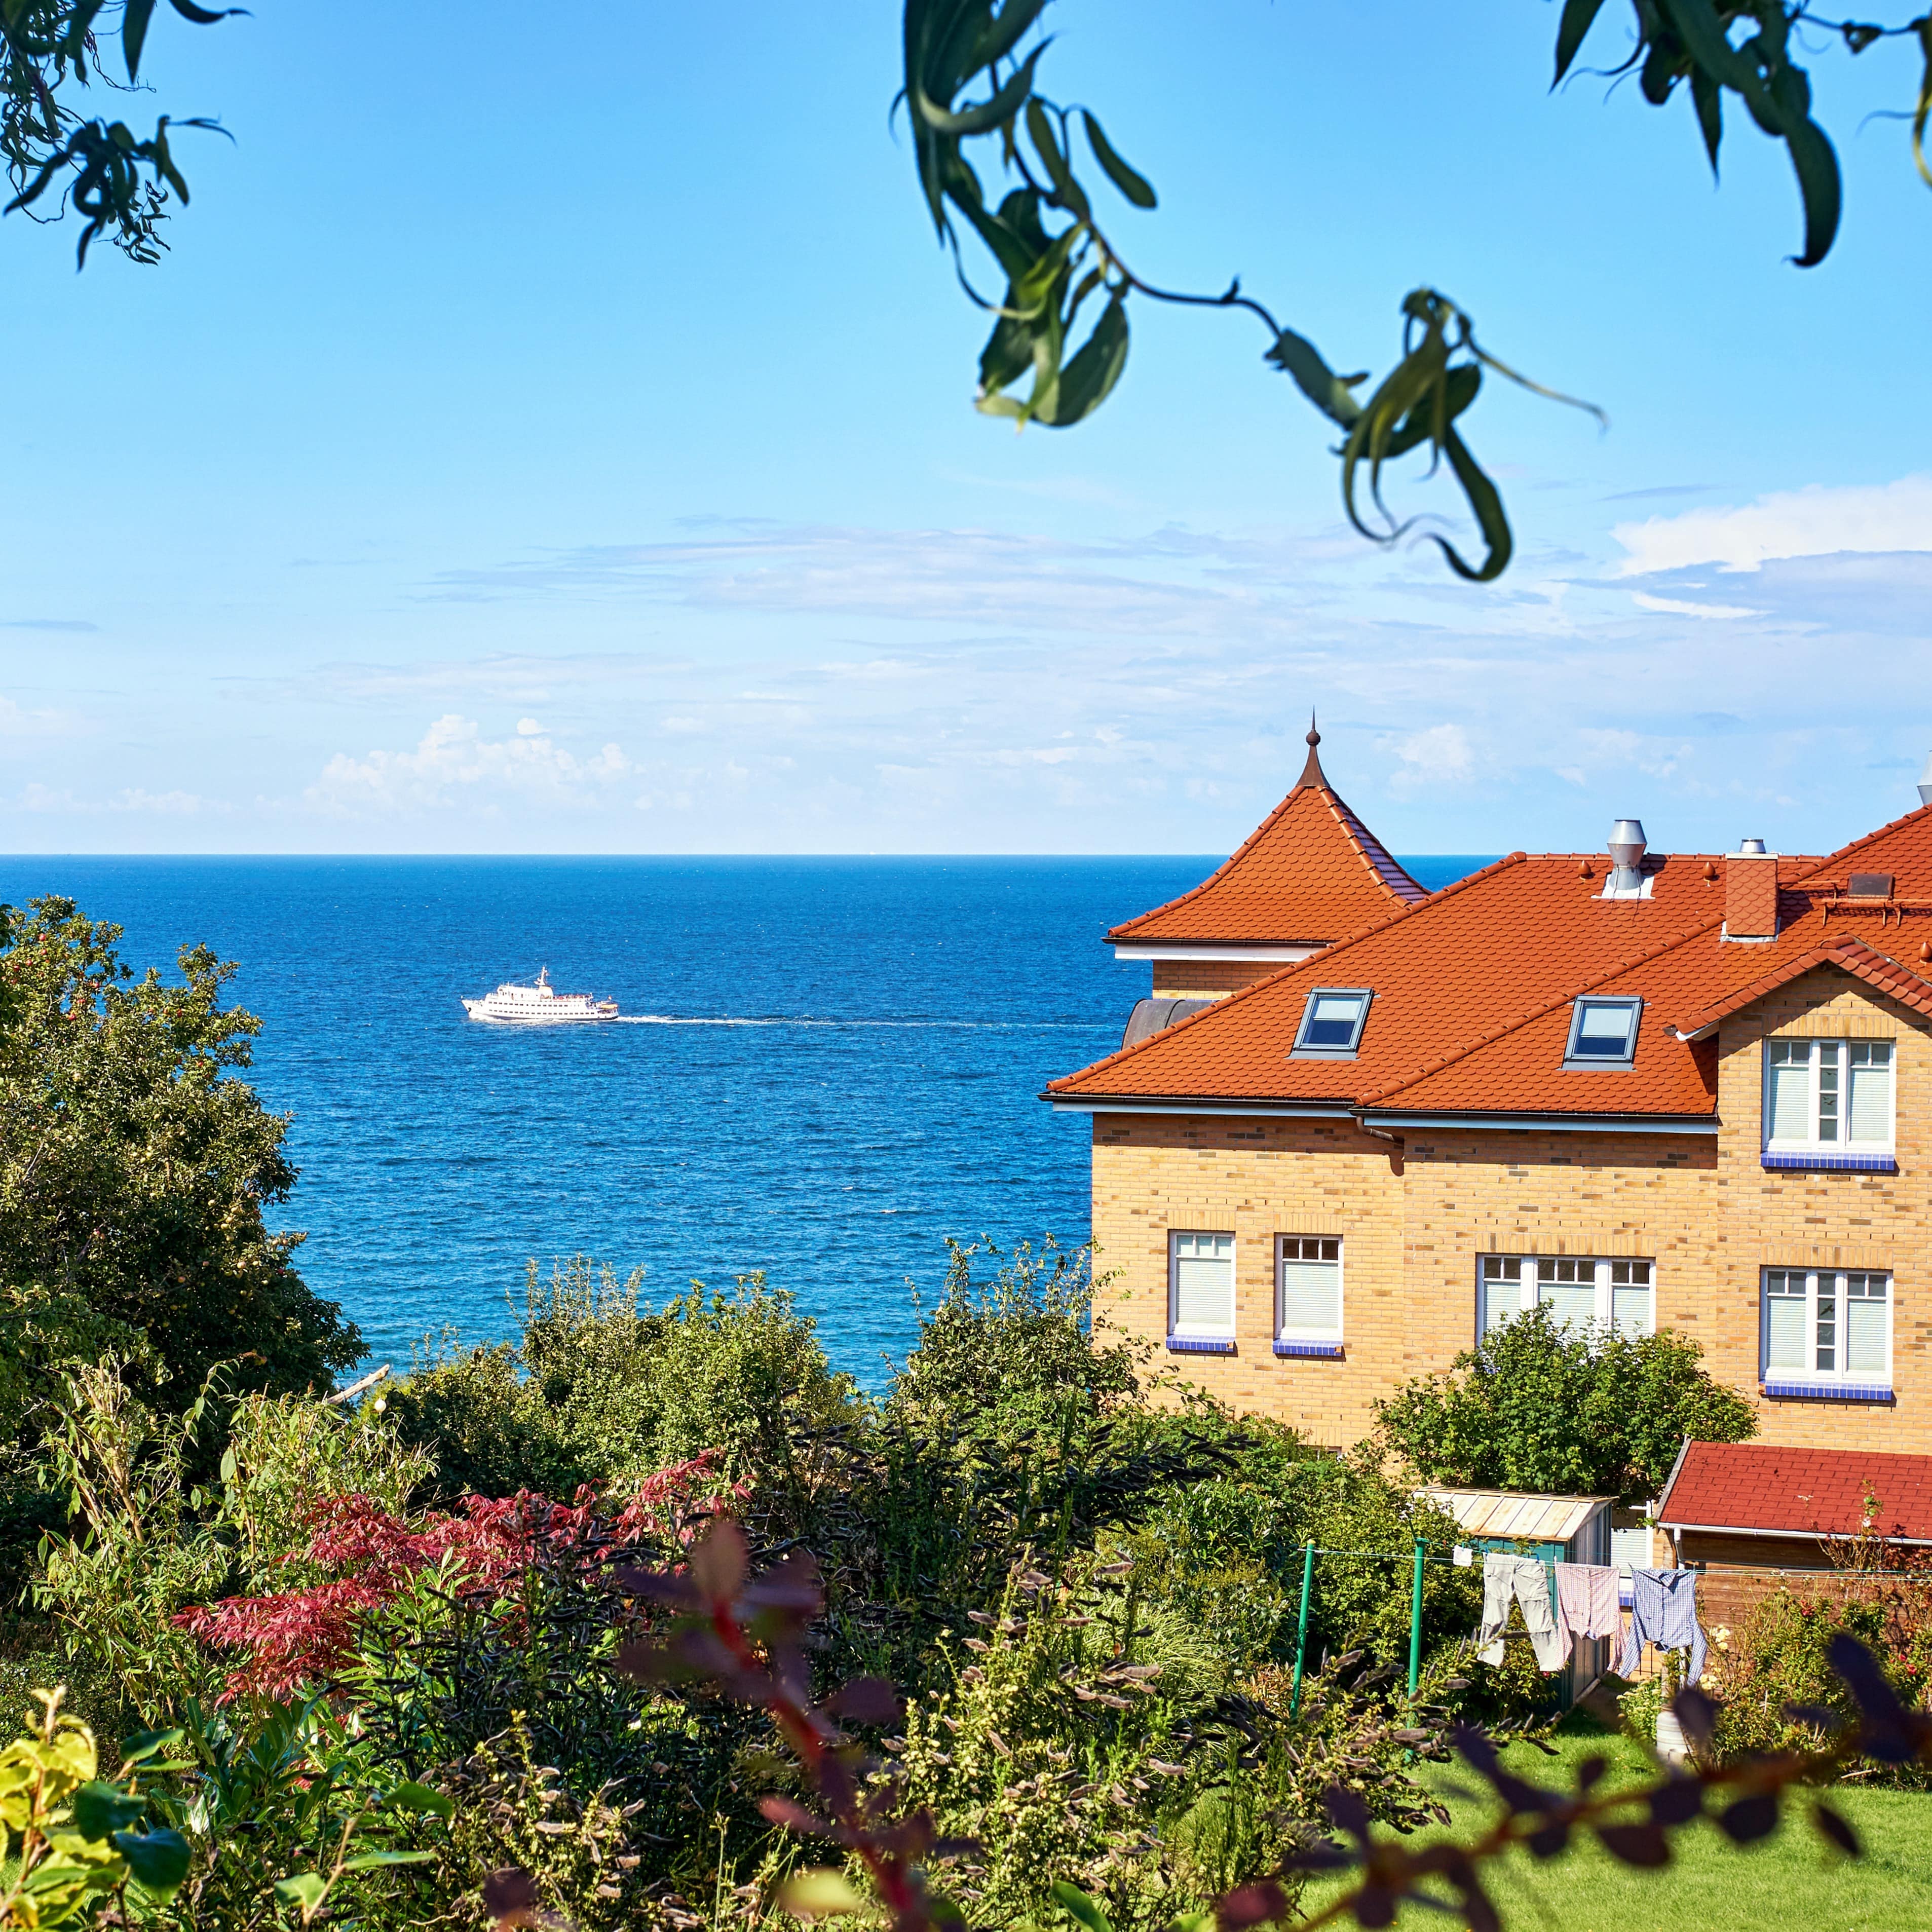 Blick in einen Garten und auf ein Haus auf Rügen, zwischen Bäumen und Haus sieht man das Meer.